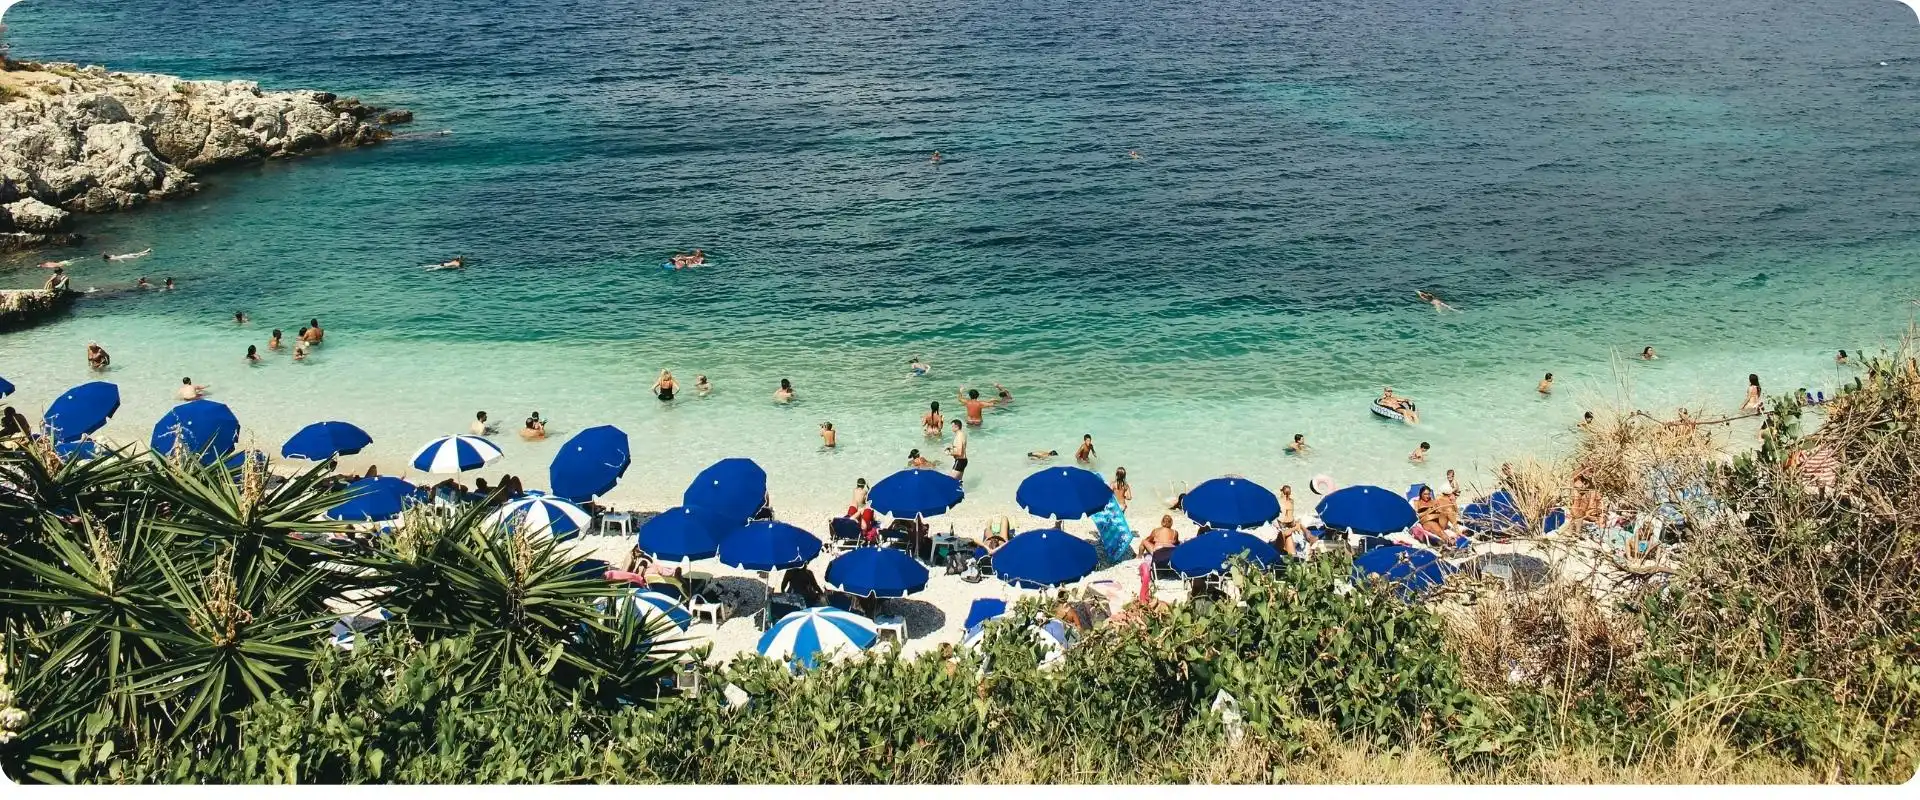 Korfu strand charterrejser til grækenland flyv fra hamborg.webp